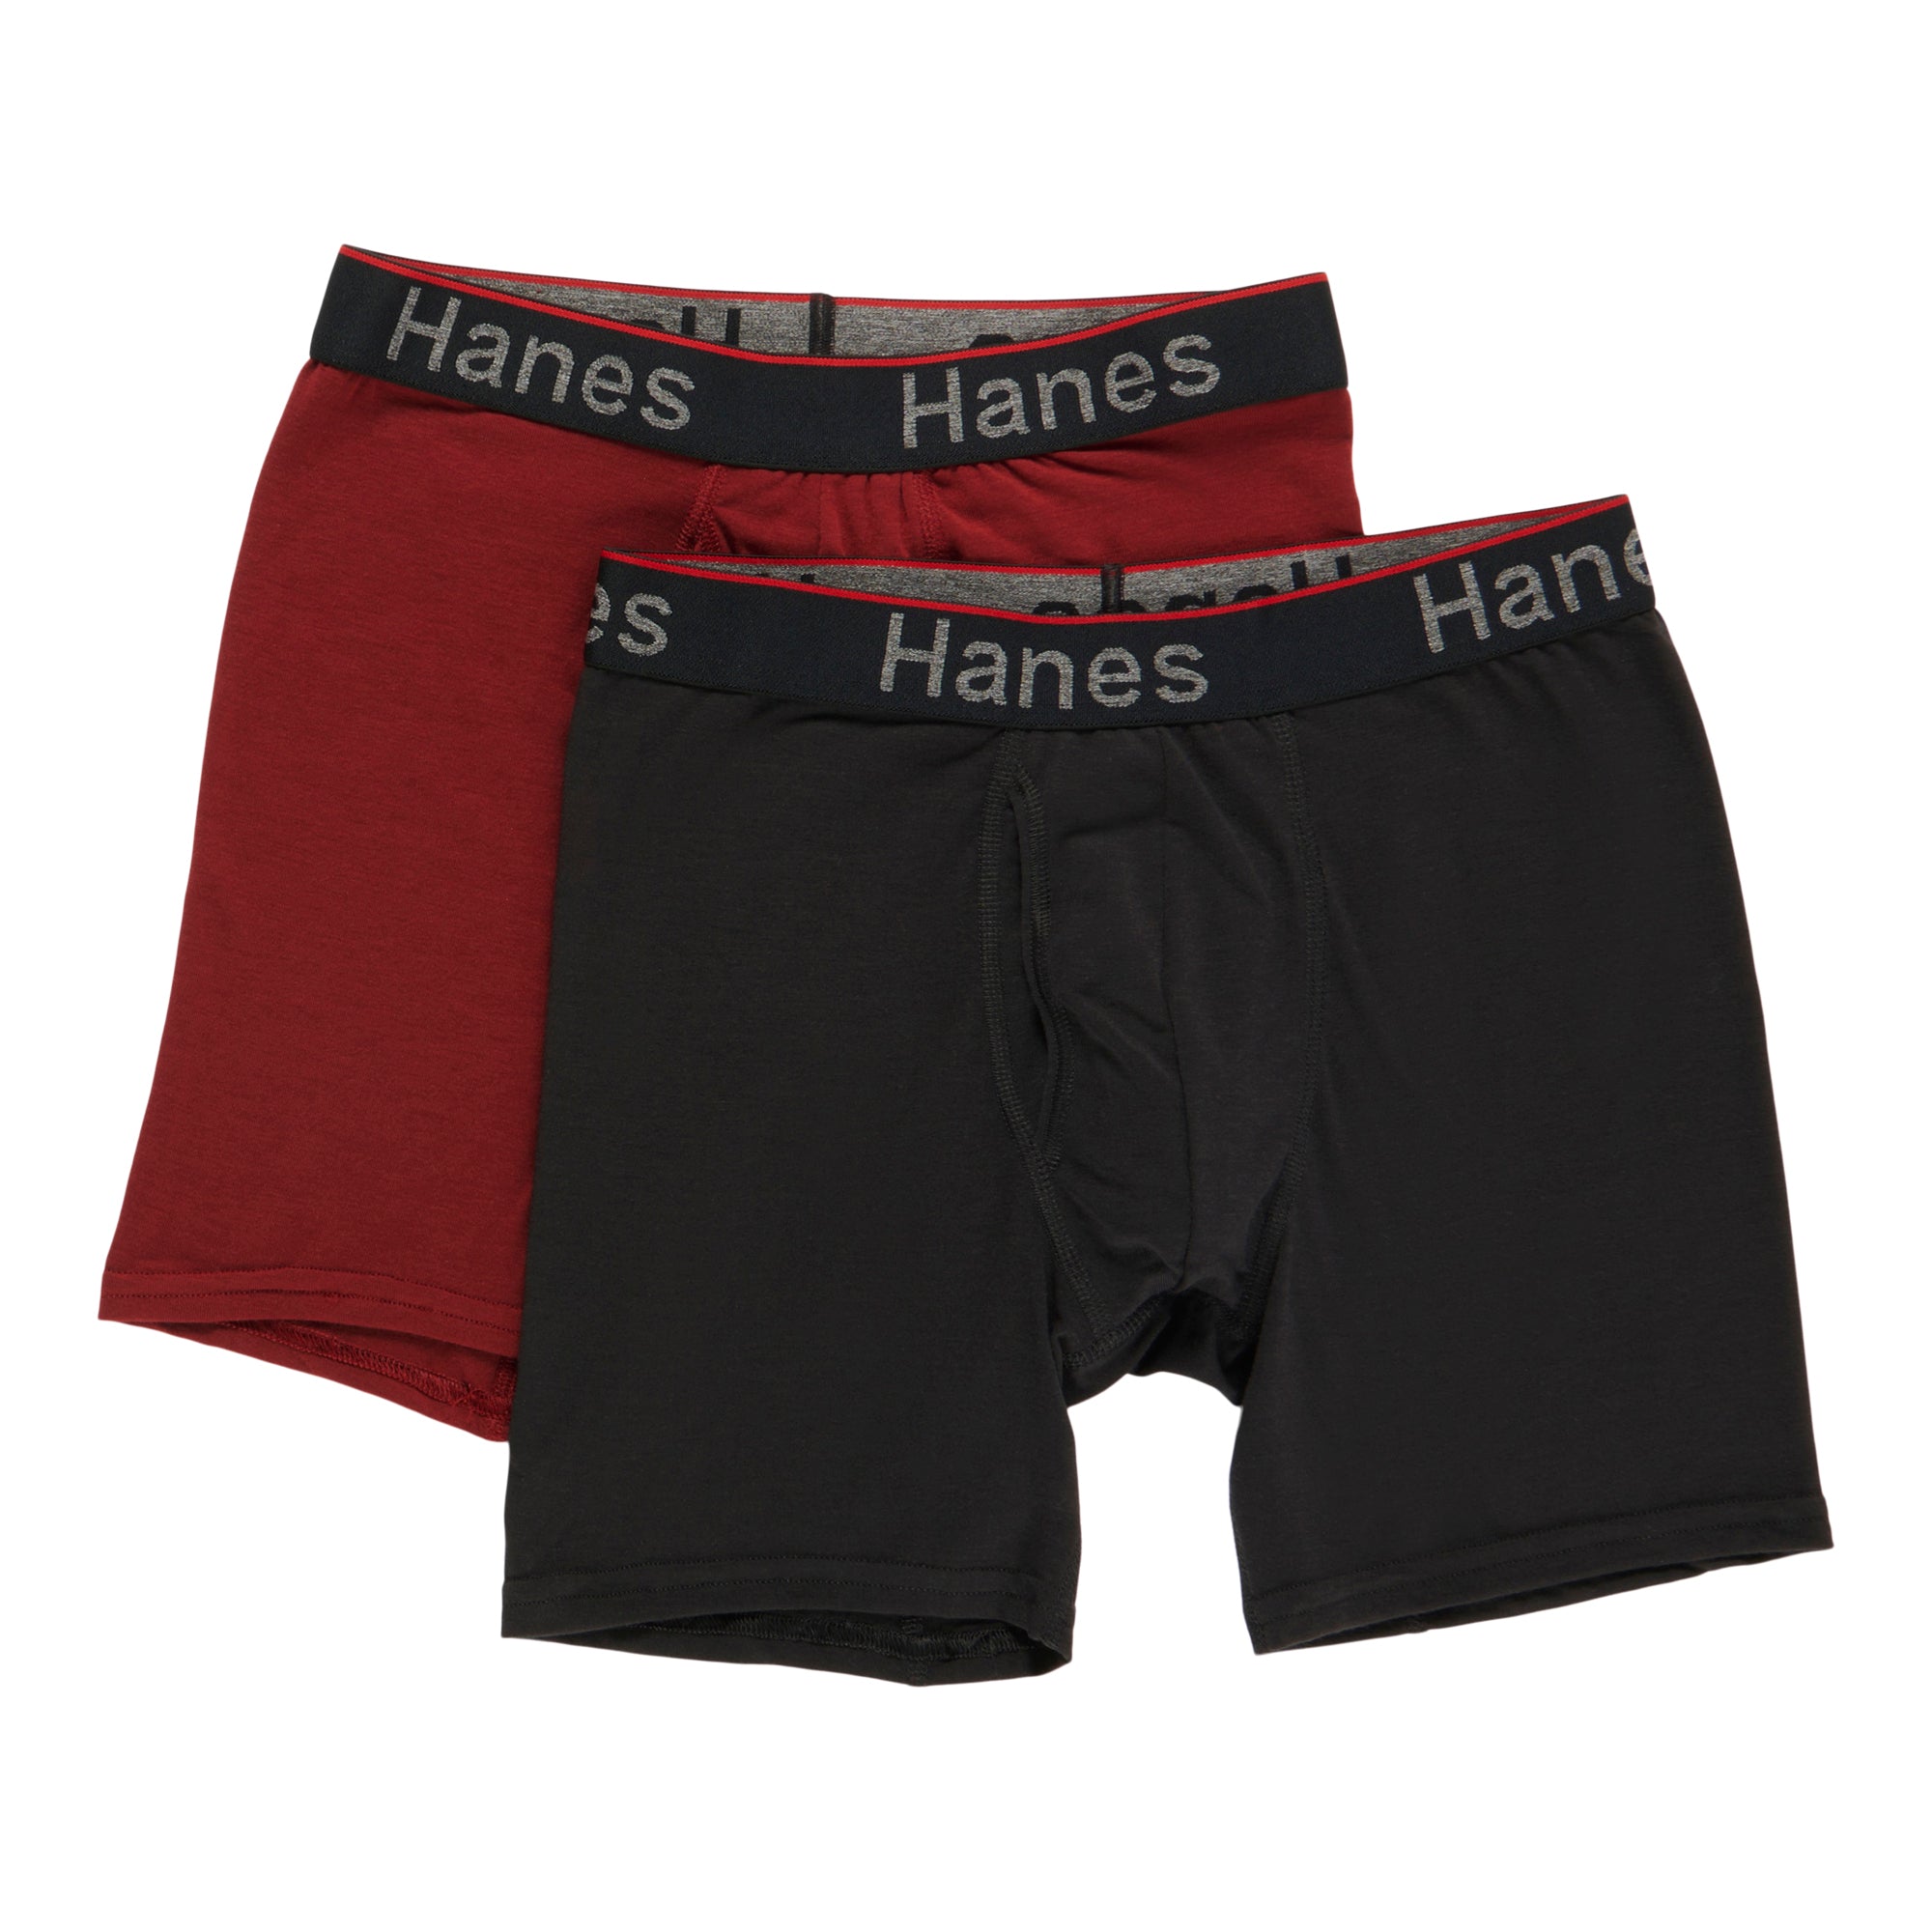 Hanes Men's Boxer Briefs, 2-Pack